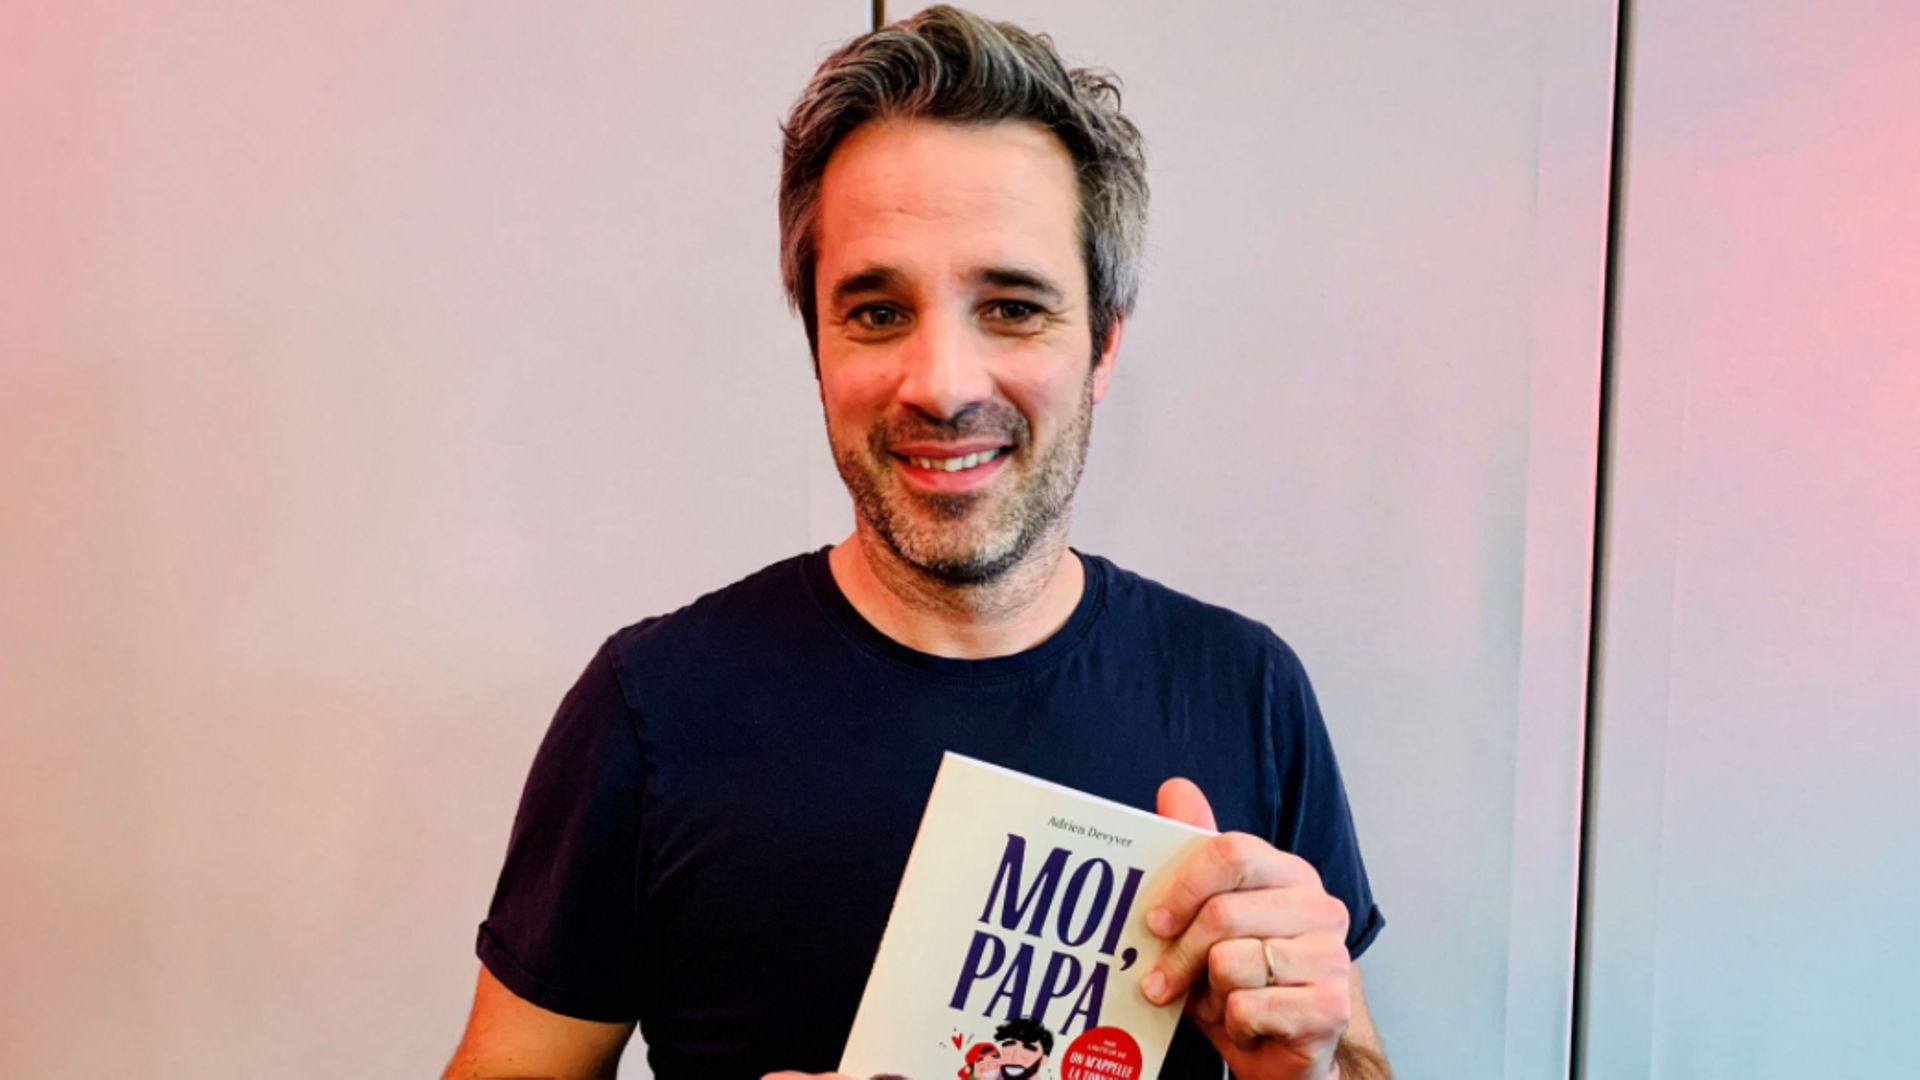 "Moi, papa !" : Adrien Devyver sort un nouveau livre dans lequel il évoque la paternité